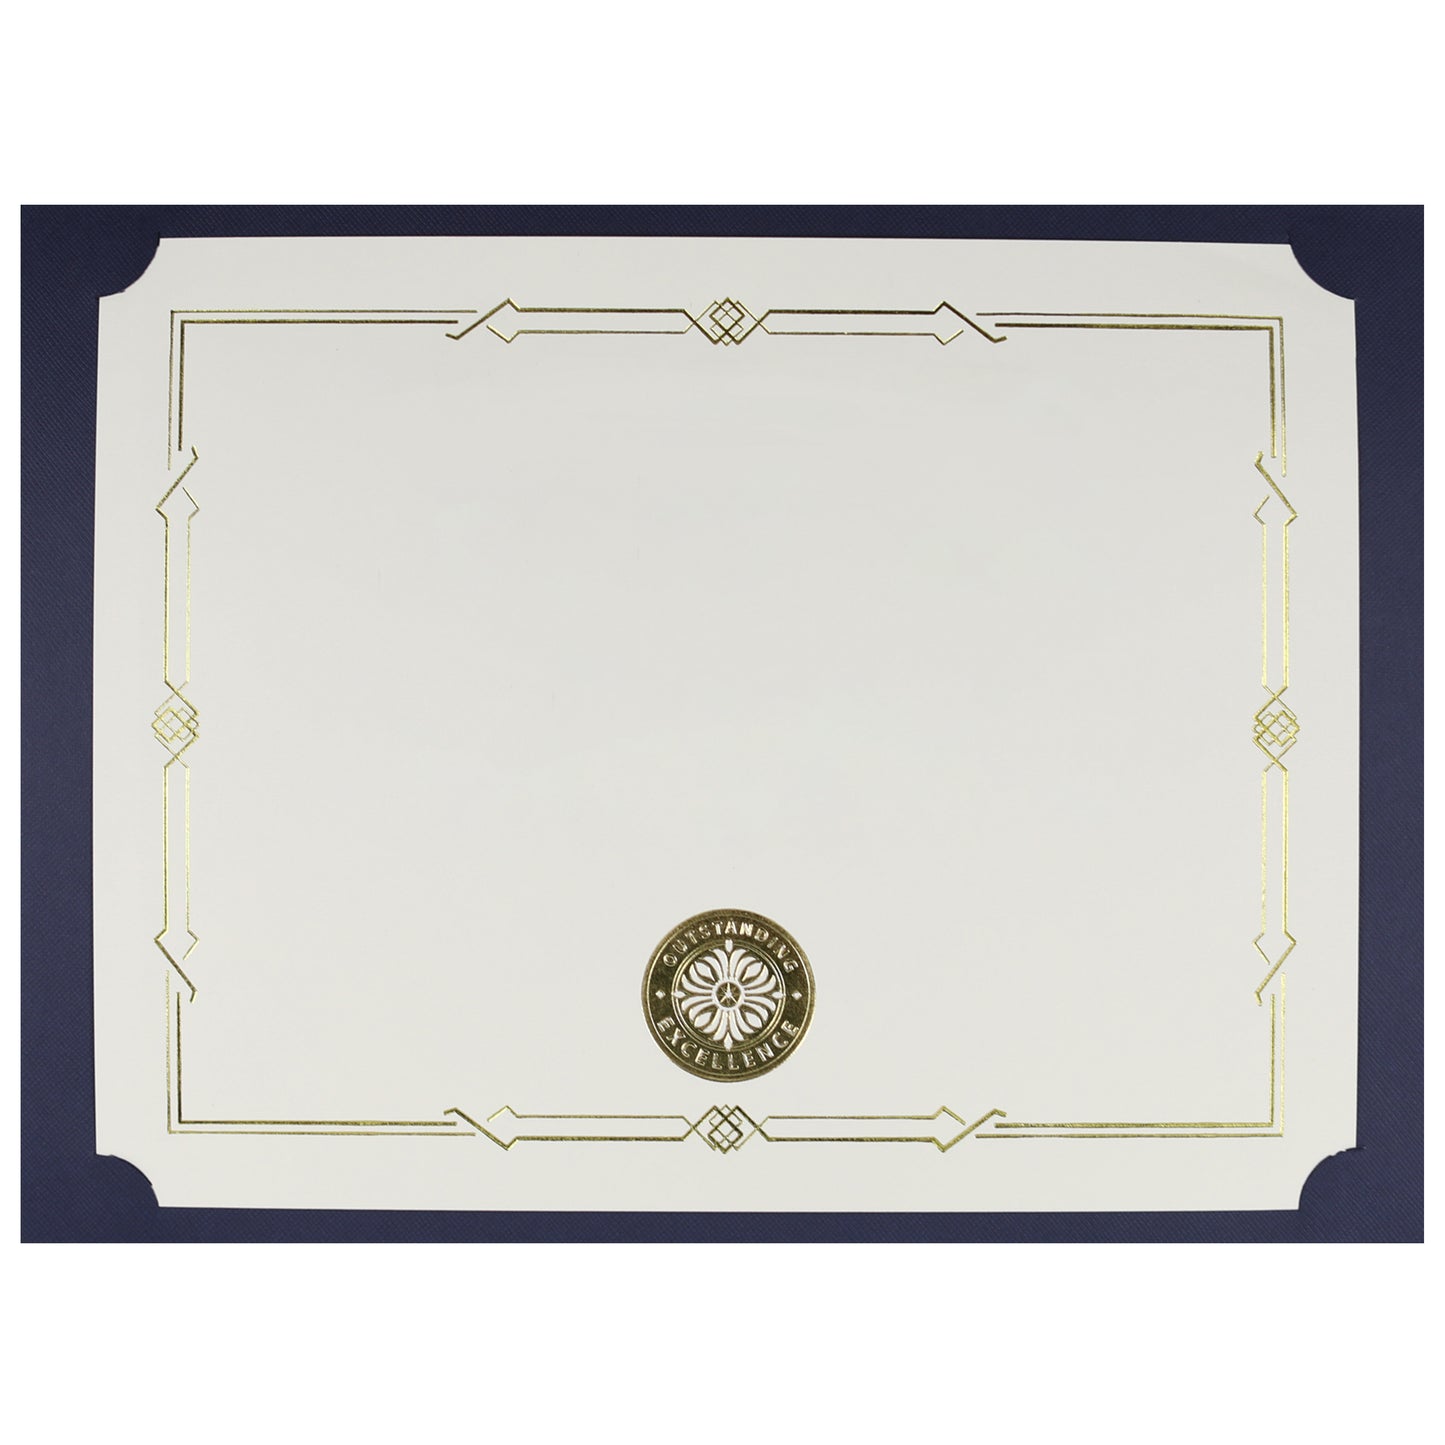 St. James® Porte-certificats/Couvertures de documents/Porte-diplômes, Bleu marine, Sceau de récompense doré avec ruban doré, Paquet de 5, 83816